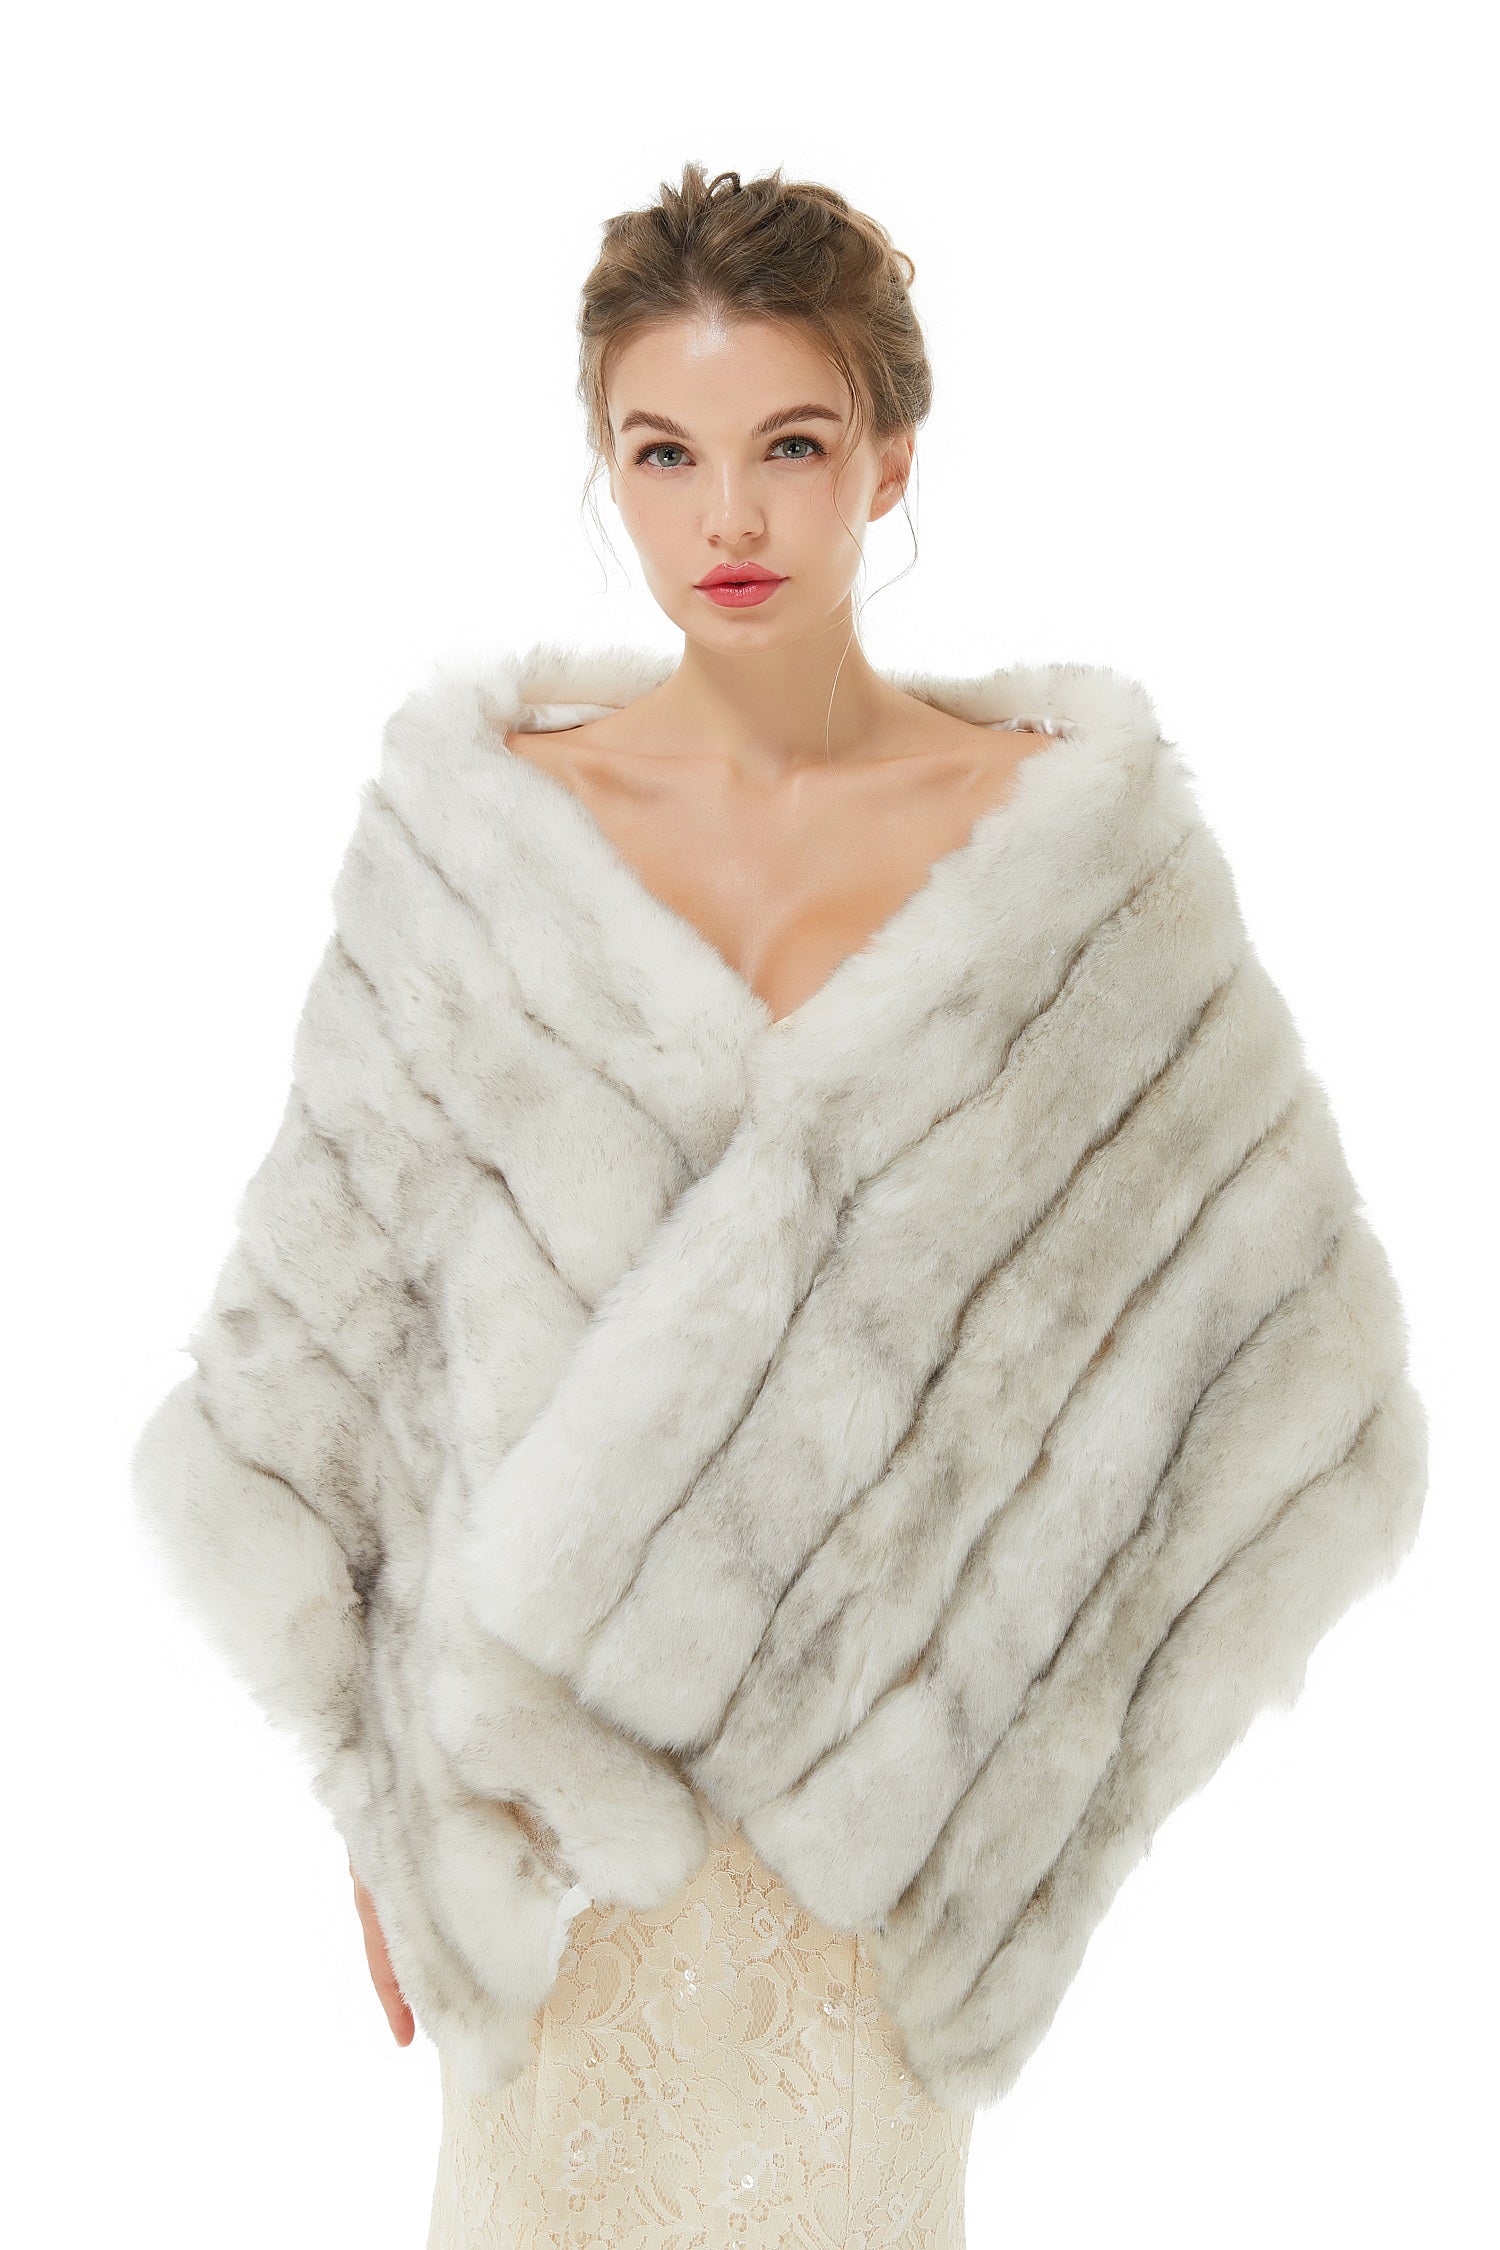 Luluslly Fashion Grey Faux Fur Shawl Women's Winter Wrap